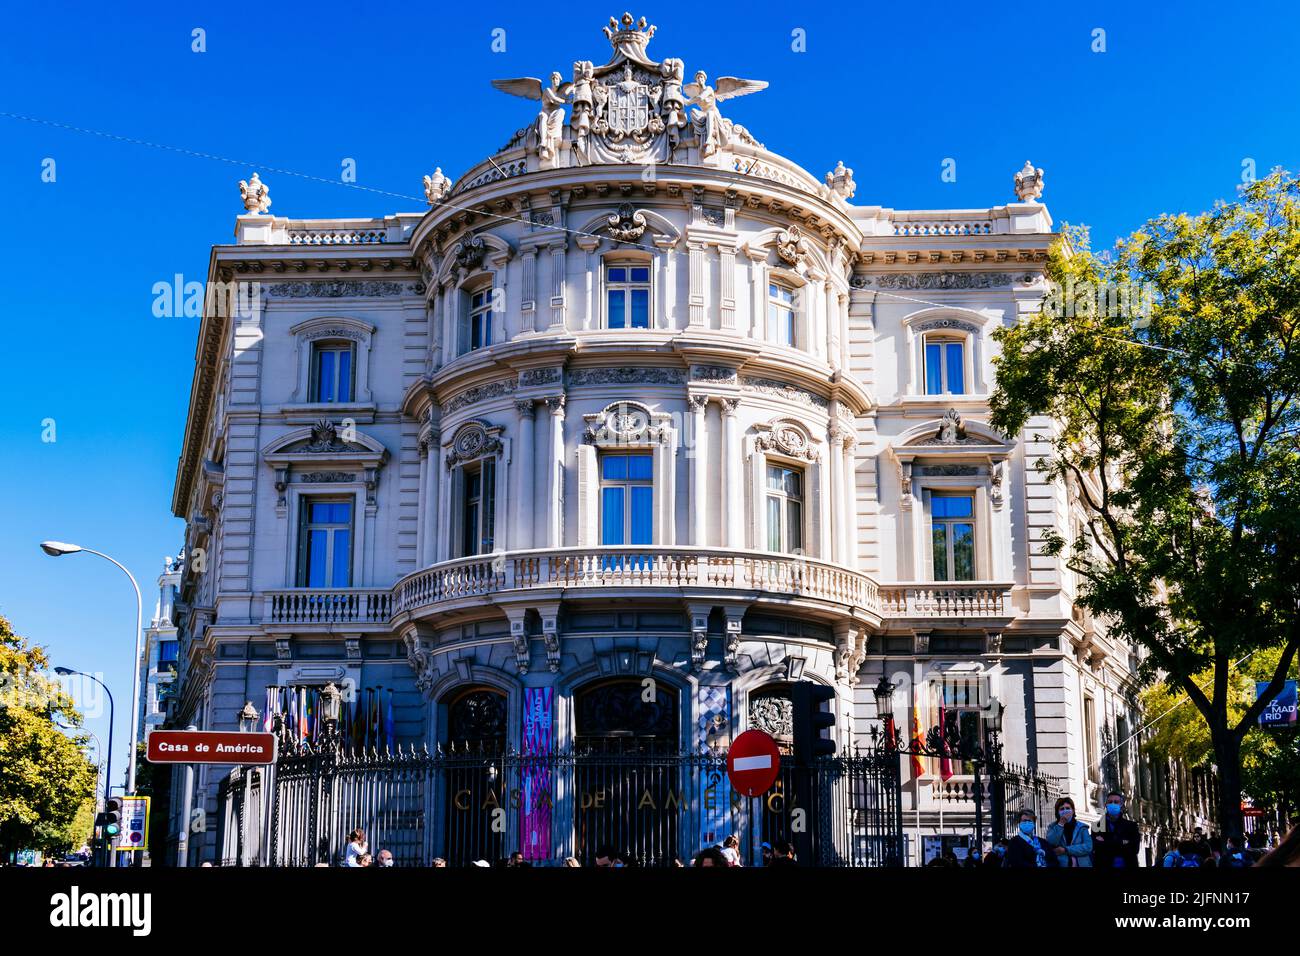 El Palacio de Linares, Palacio de Linares, es un palacio situado en Madrid. Fue declarado monumento histórico-artístico nacional. Ubicado en la plaza de Foto de stock